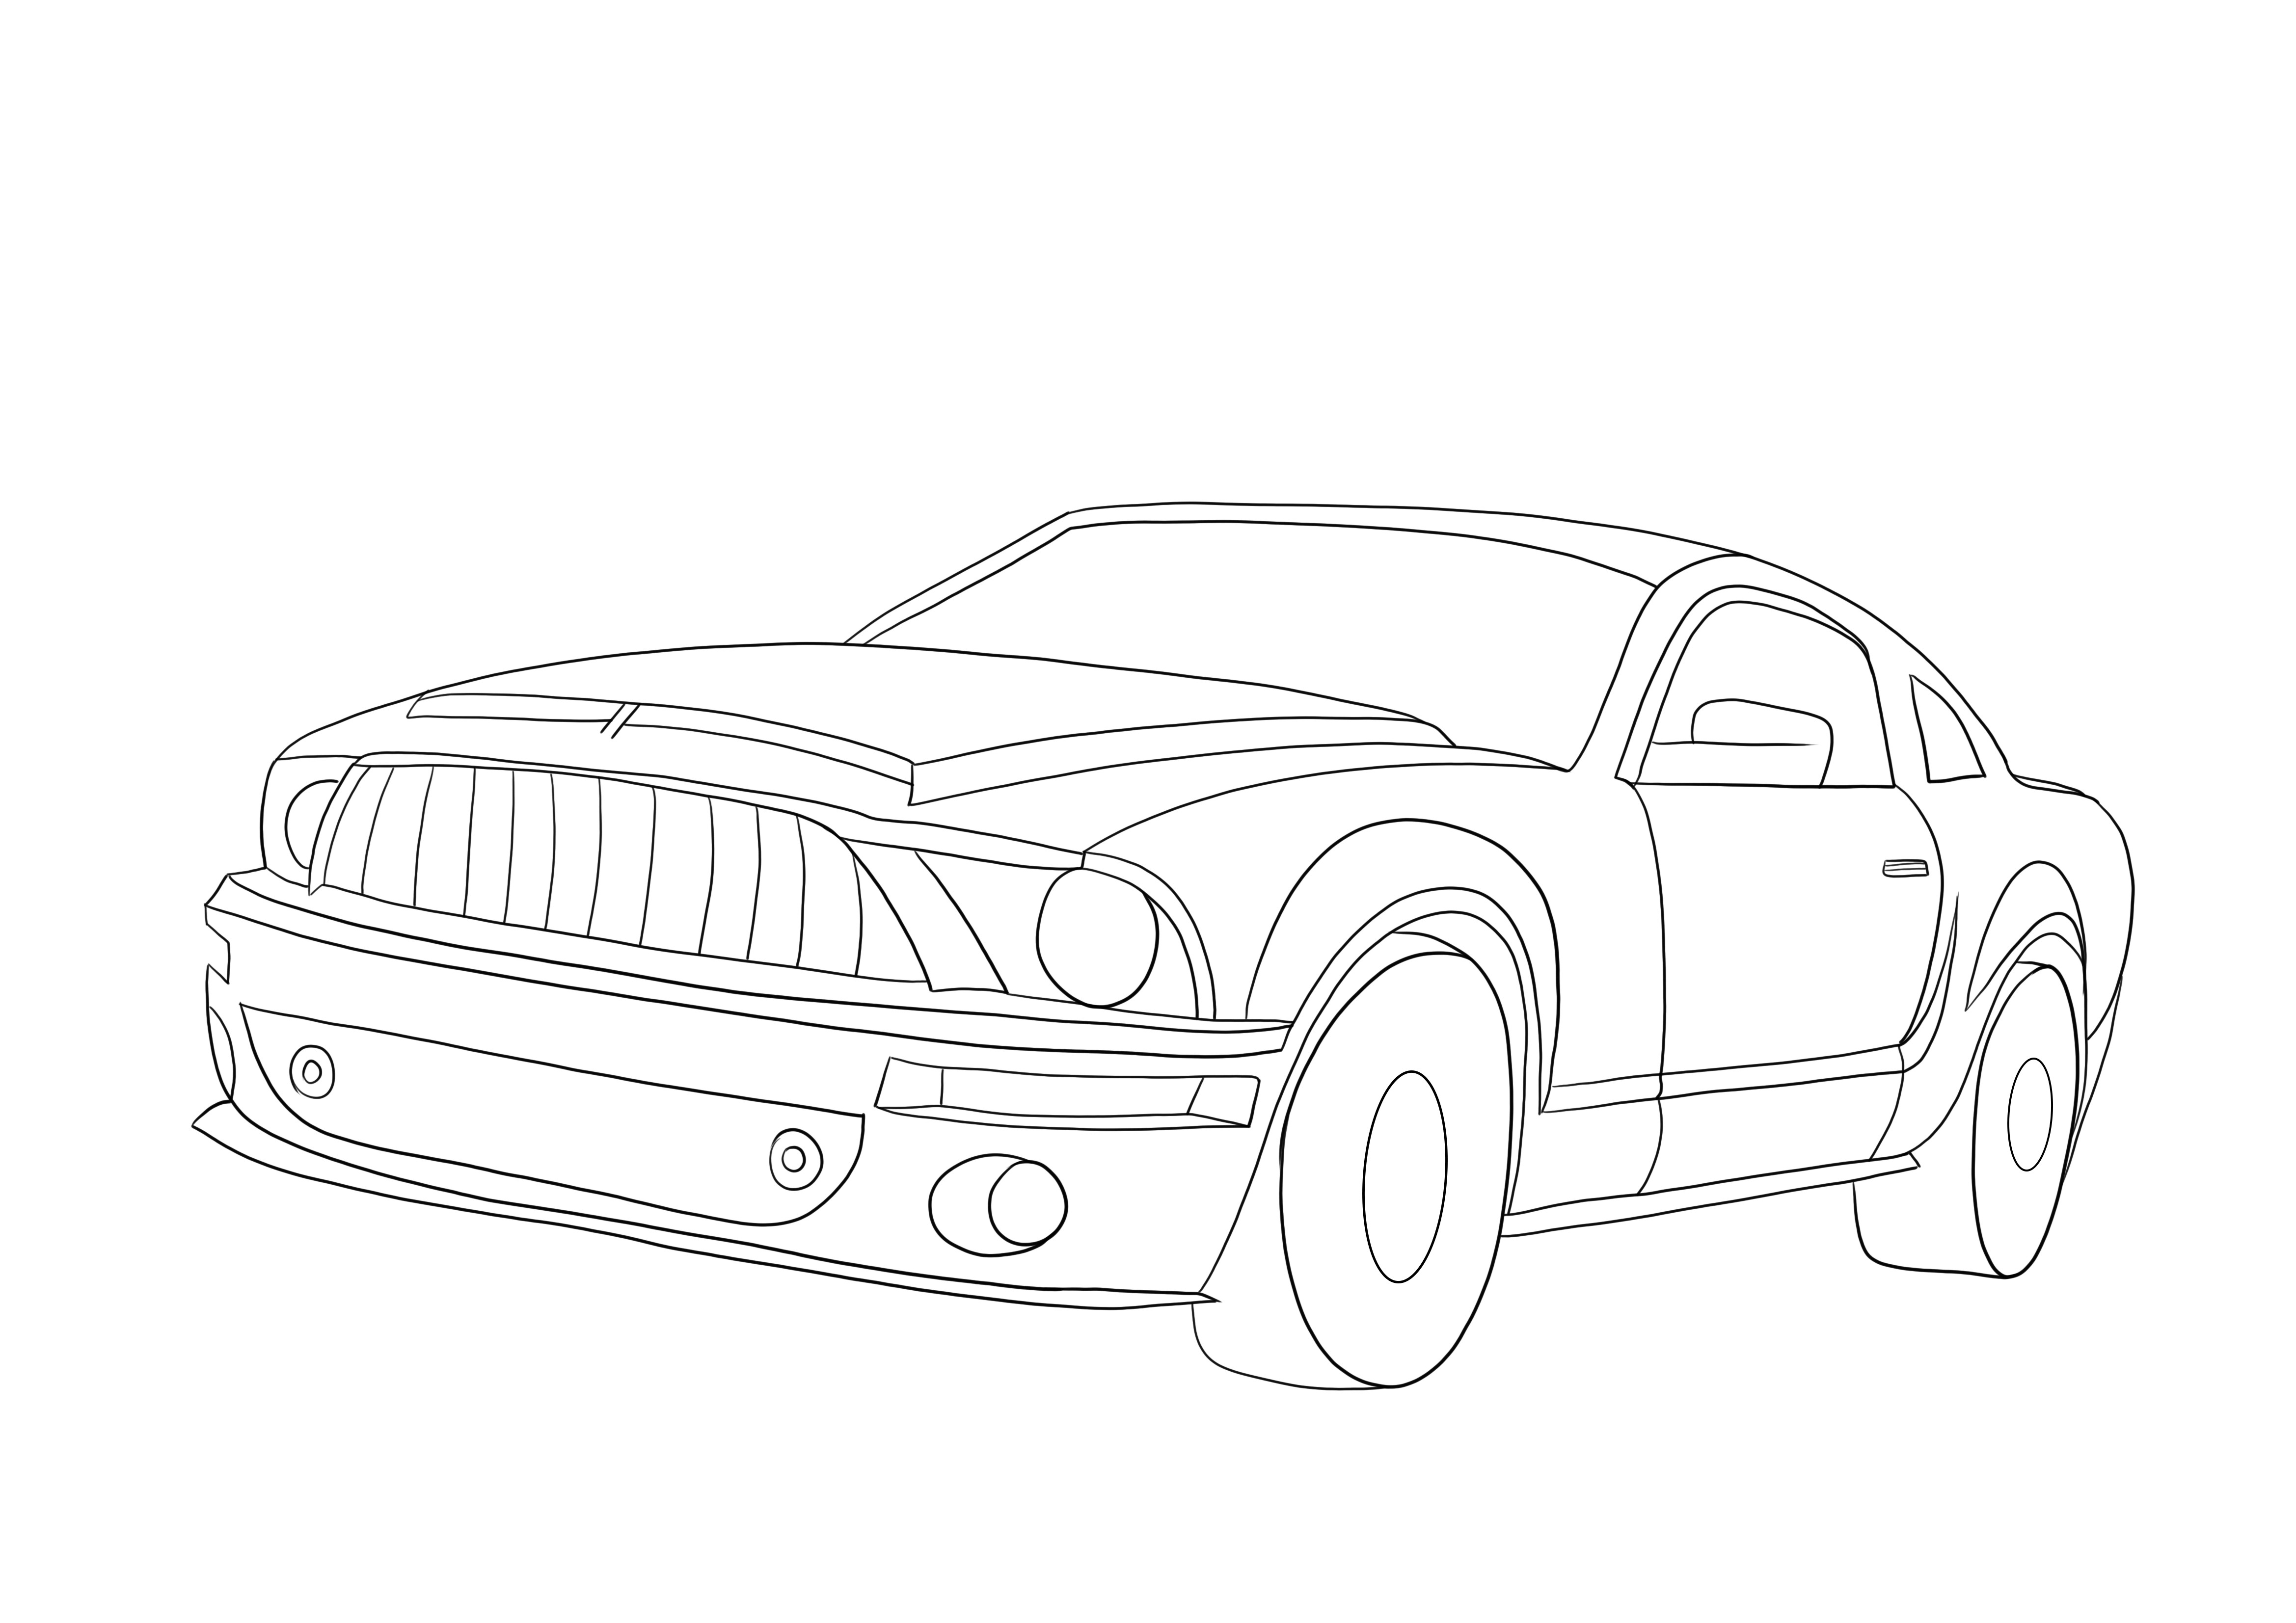 Ford Mustang facile da colorare e stampare per immagini gratuite